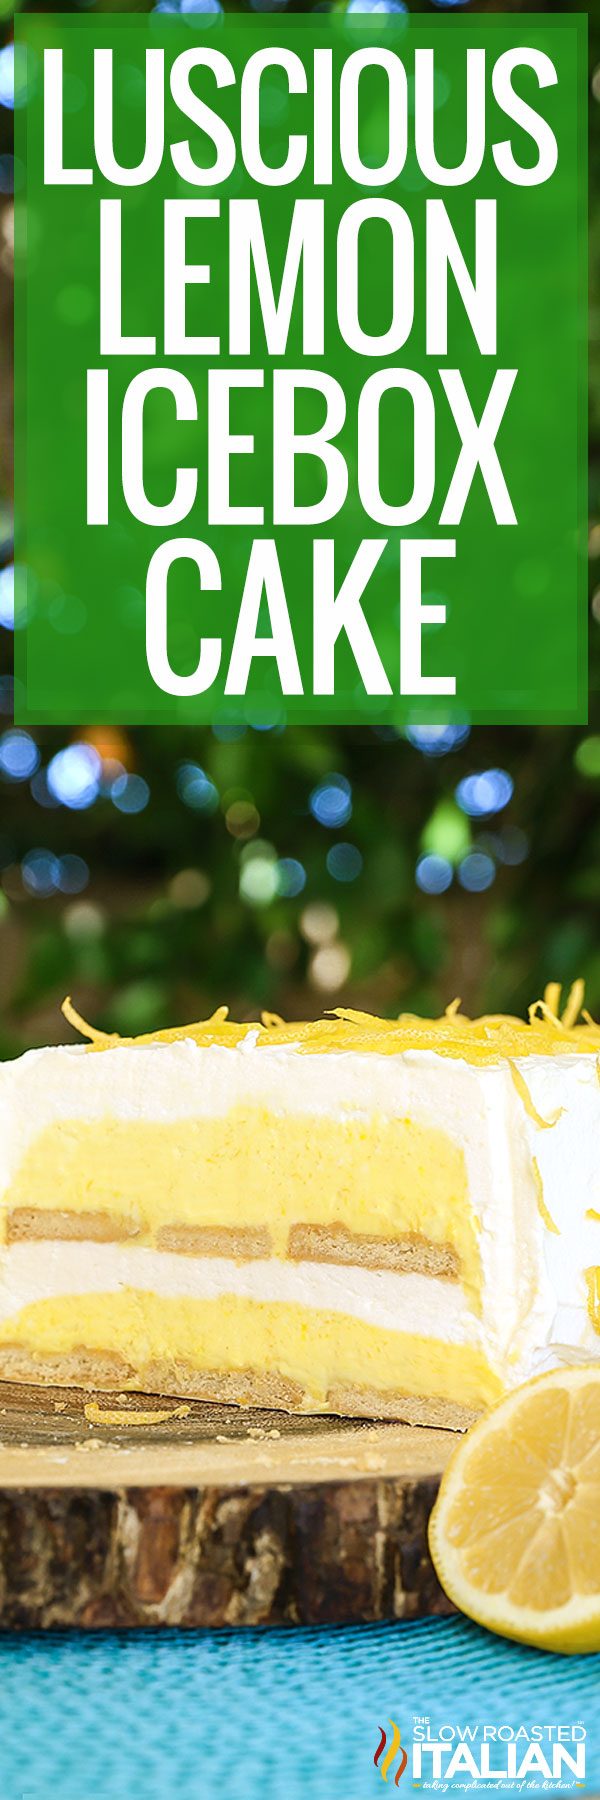 titled image for luscious lemon icebox cake